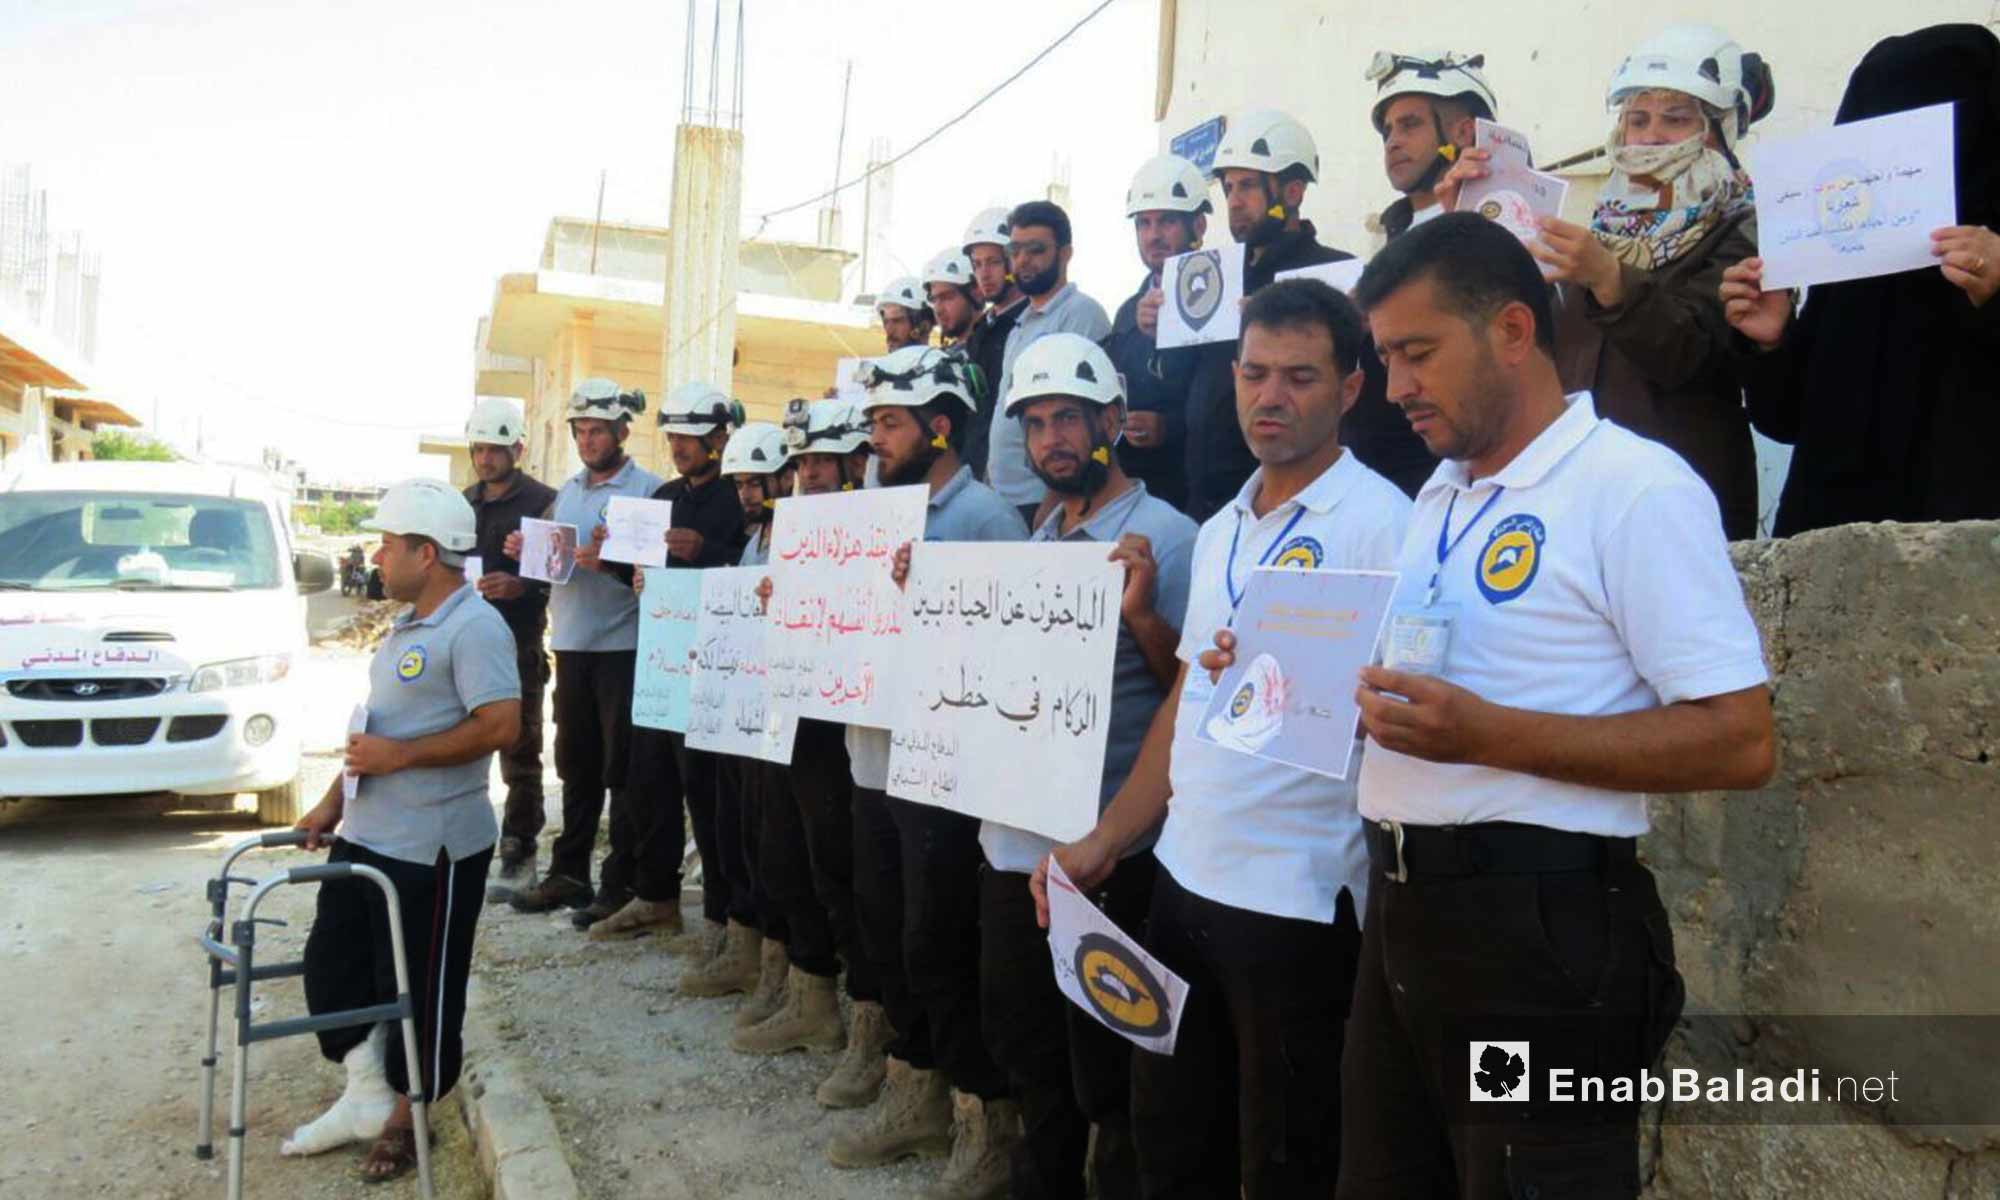 وقفة تضامنية لعناصر من الدفاع المدني العامل في ريف حماة تنديدًا بمجزرة بحق عناصر من المنظمة في سرمين - 13 آب 2017 (عنب بلدي)